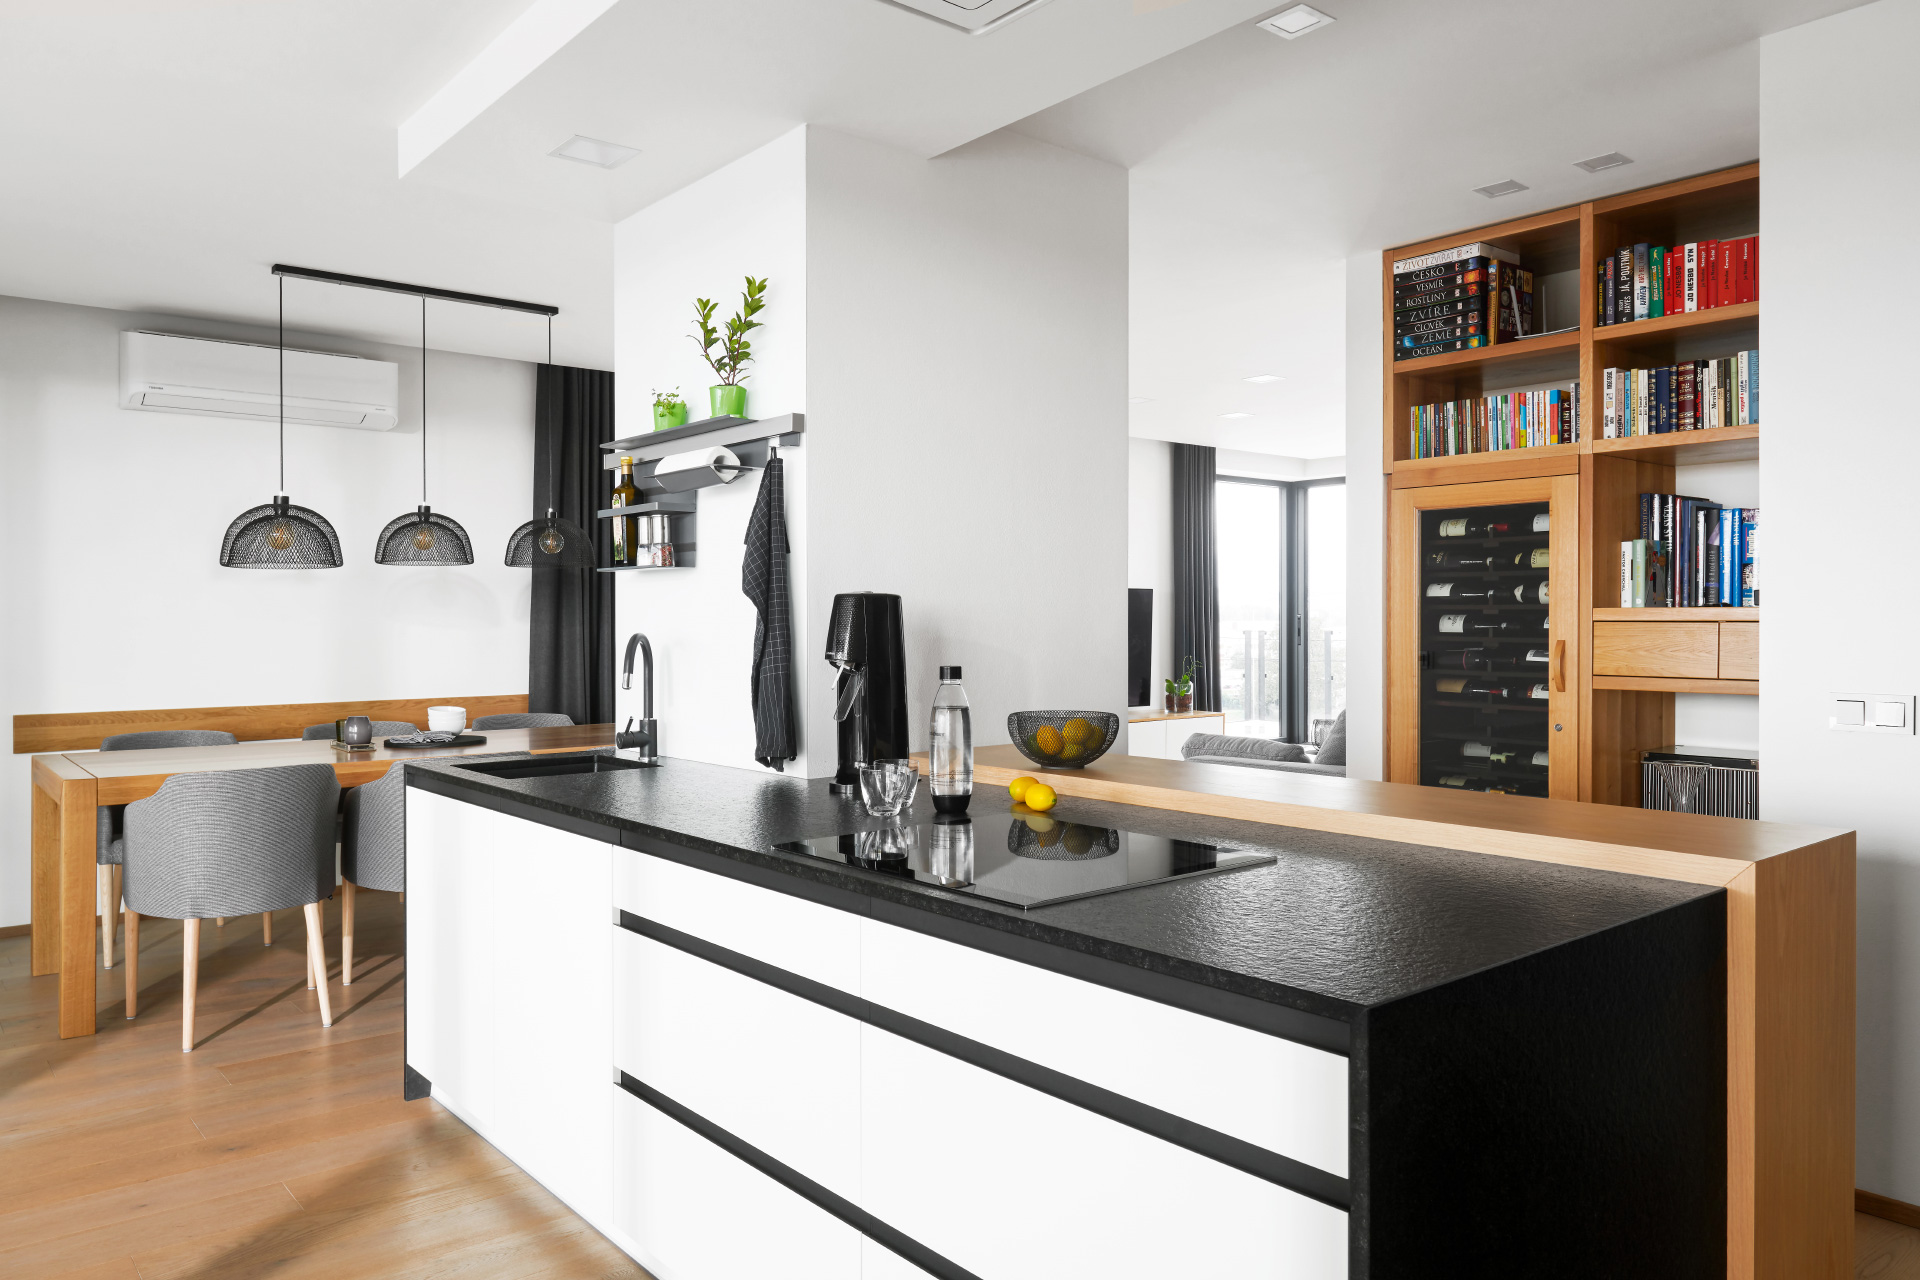 Hanák nábytek SIMPLE/STYLE kitchen